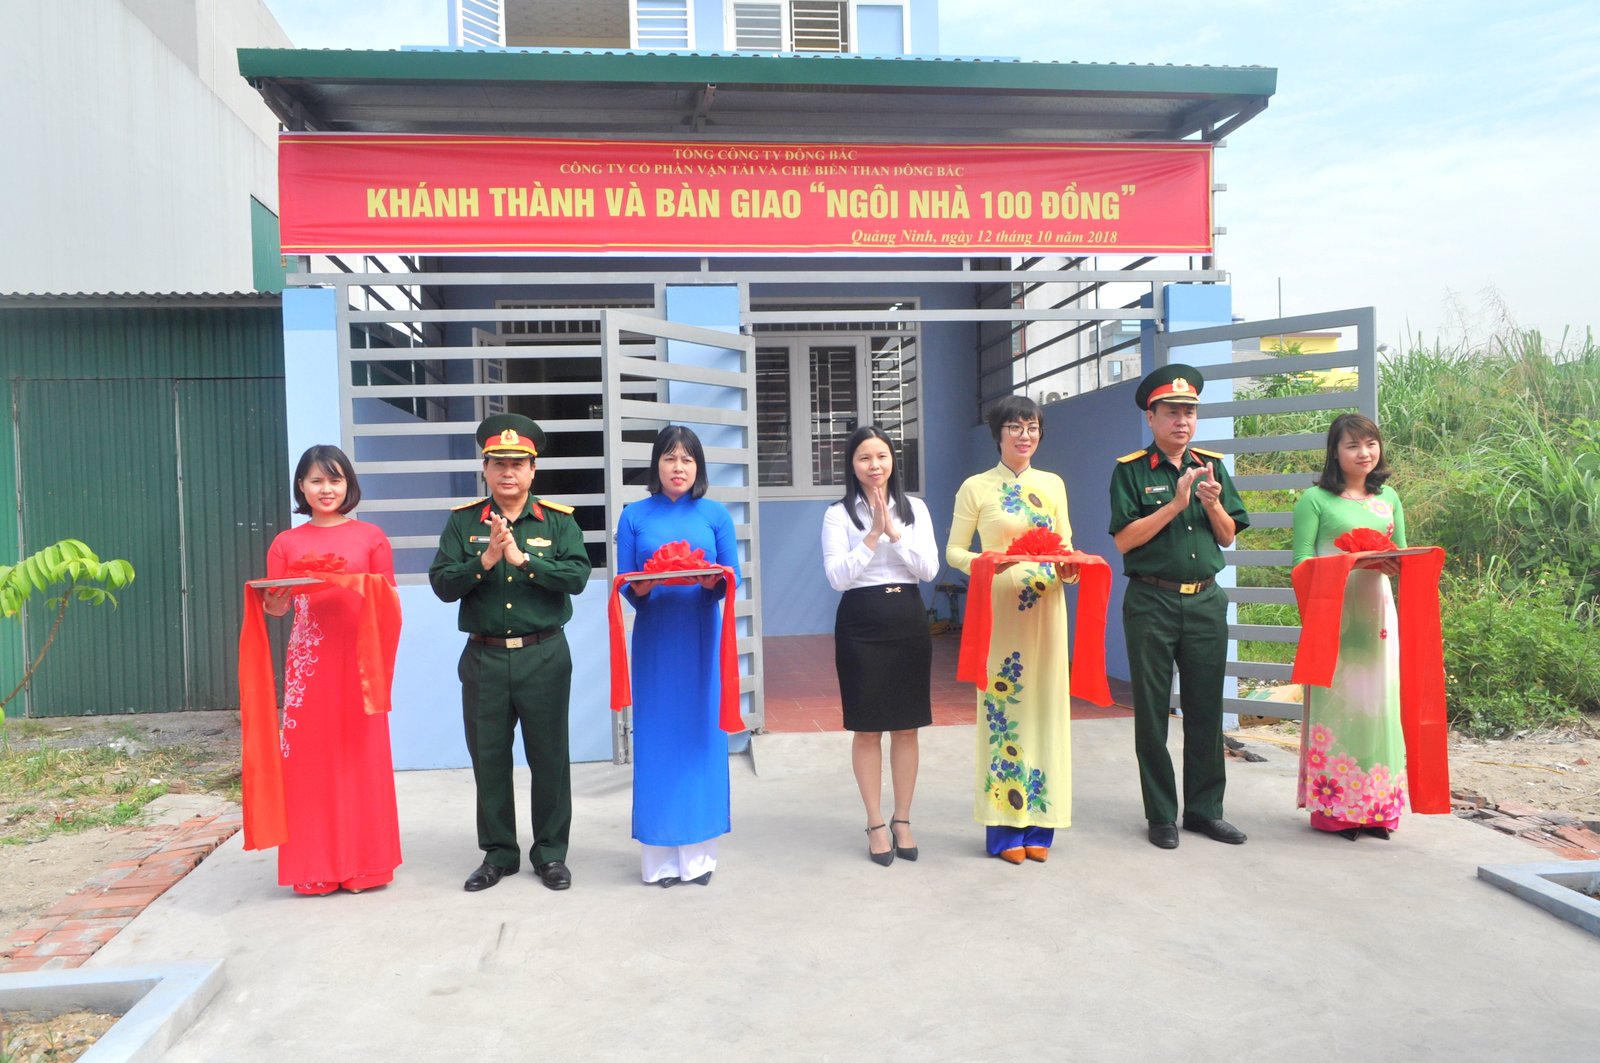 Khánh thành và bàn giao "Ngôi nhà 100 đồng" cho gia đình đồng chí trung úy QNCN Nguyễn Văn Dũng, cán bộ đoàn có hoàn cảnh khó khăn.